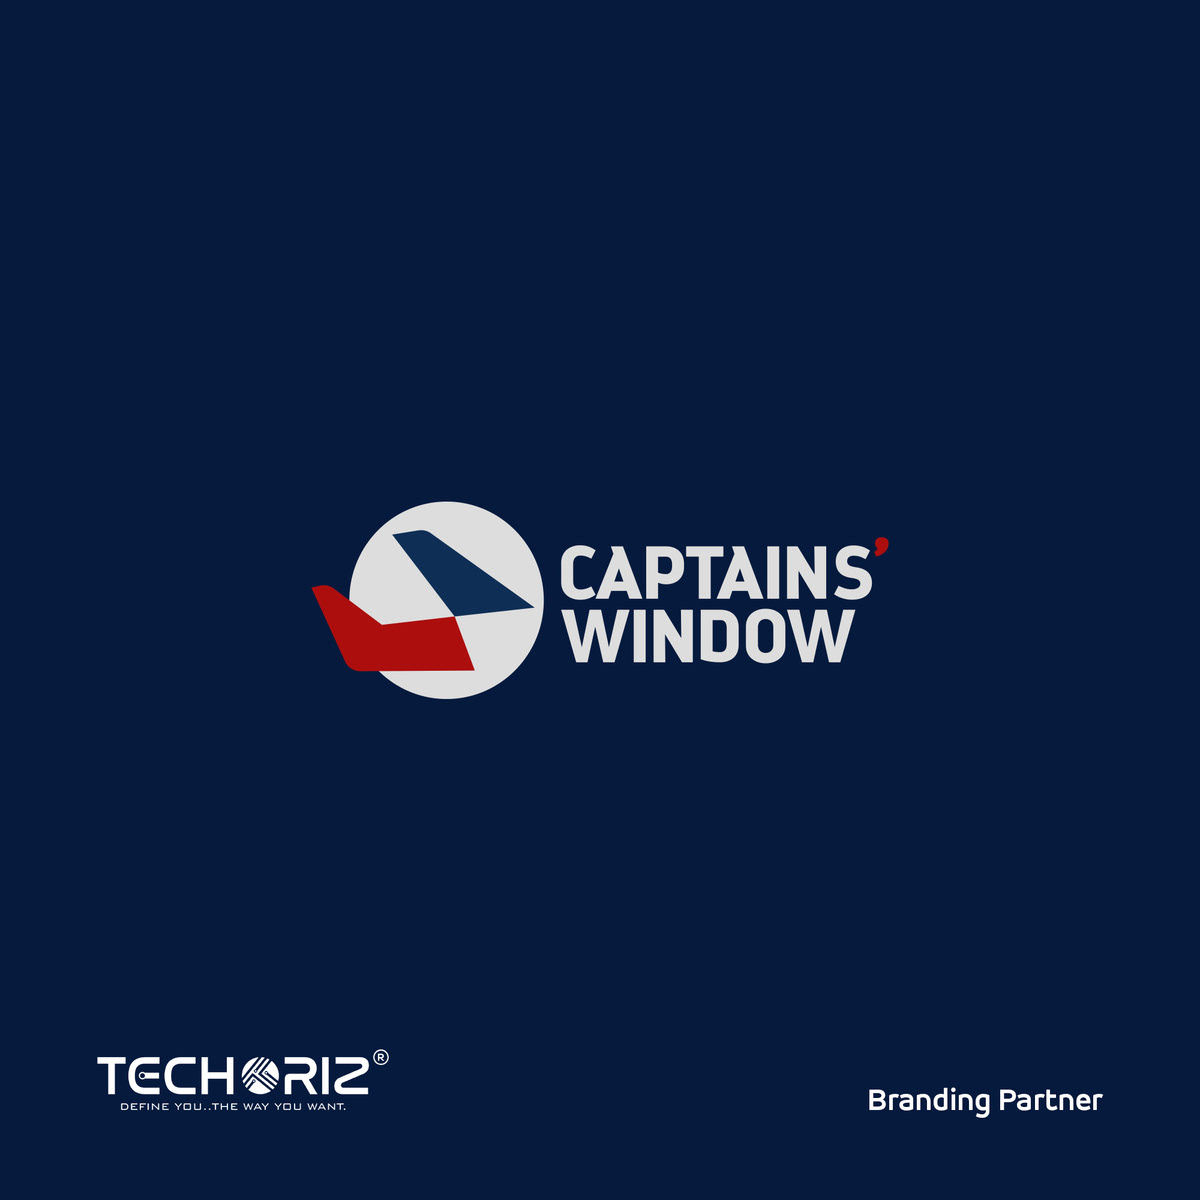 Branding and Social media partner for Captains window